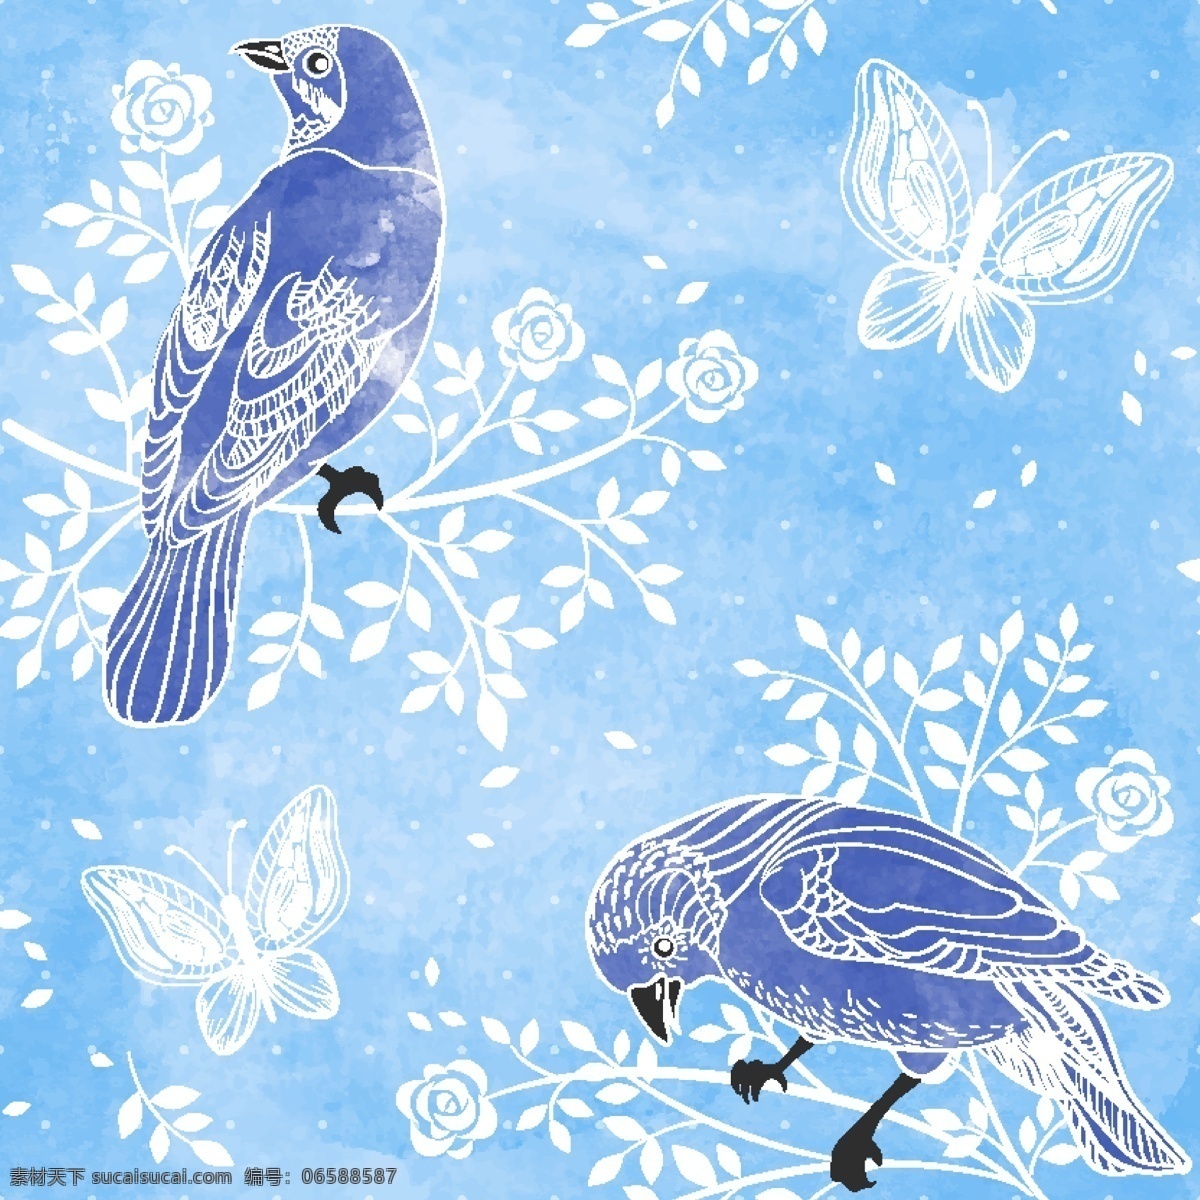 鸟儿 花卉 背景 花枝 枝头 蝴蝶 鸟儿花卉背景 鸟和花卉壁纸 空中飞鸟 底纹边框 矢量素材 青色 天蓝色